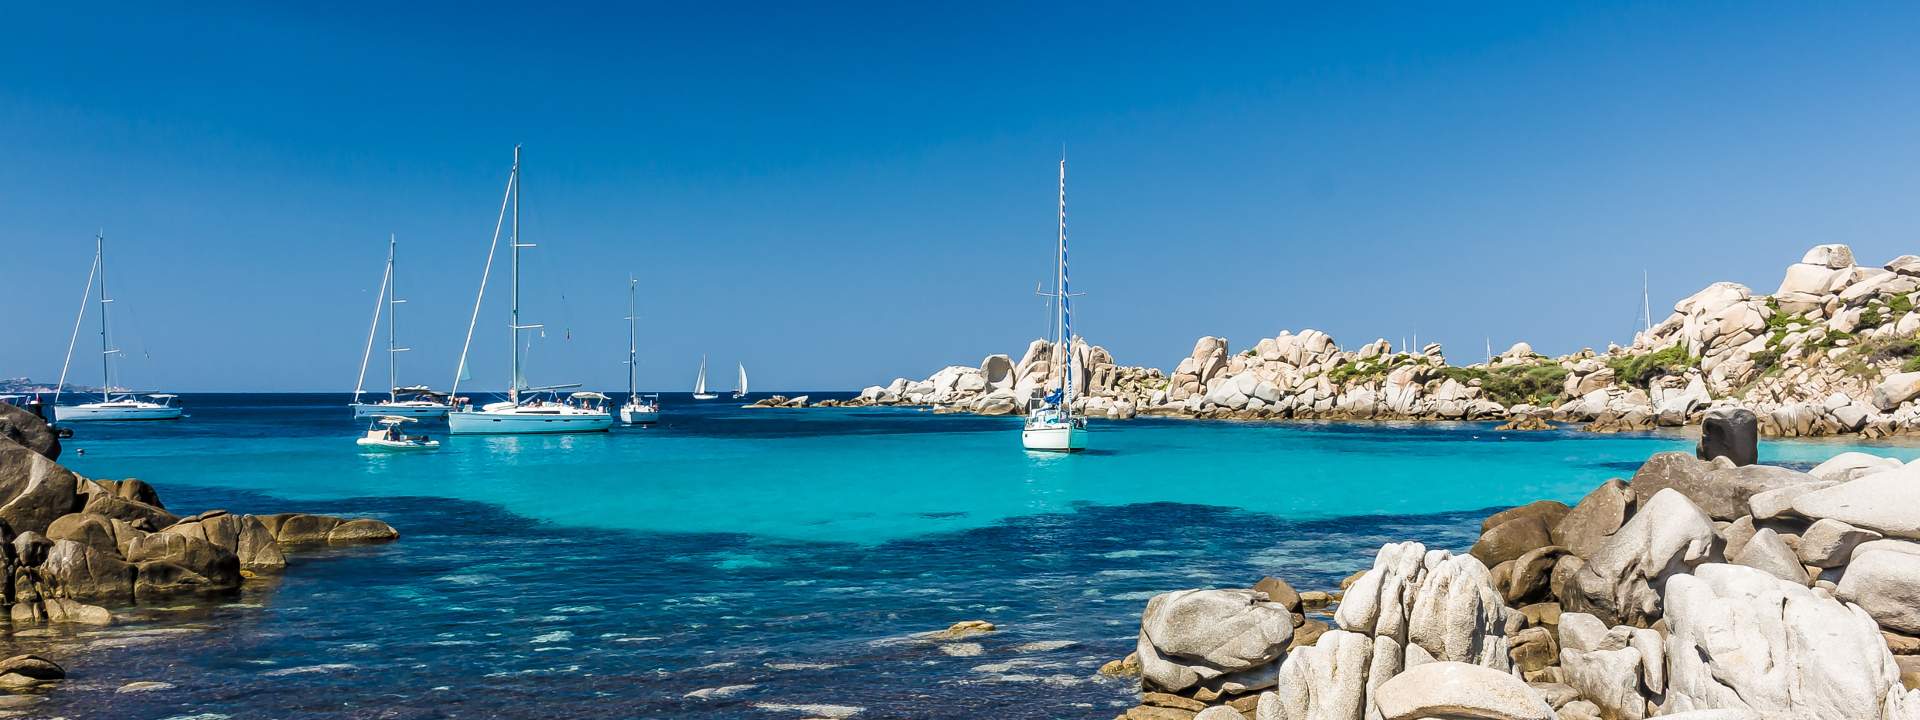 Descubre los fondeaderos más hermosos de Córcega y Cerdeña en catamarán